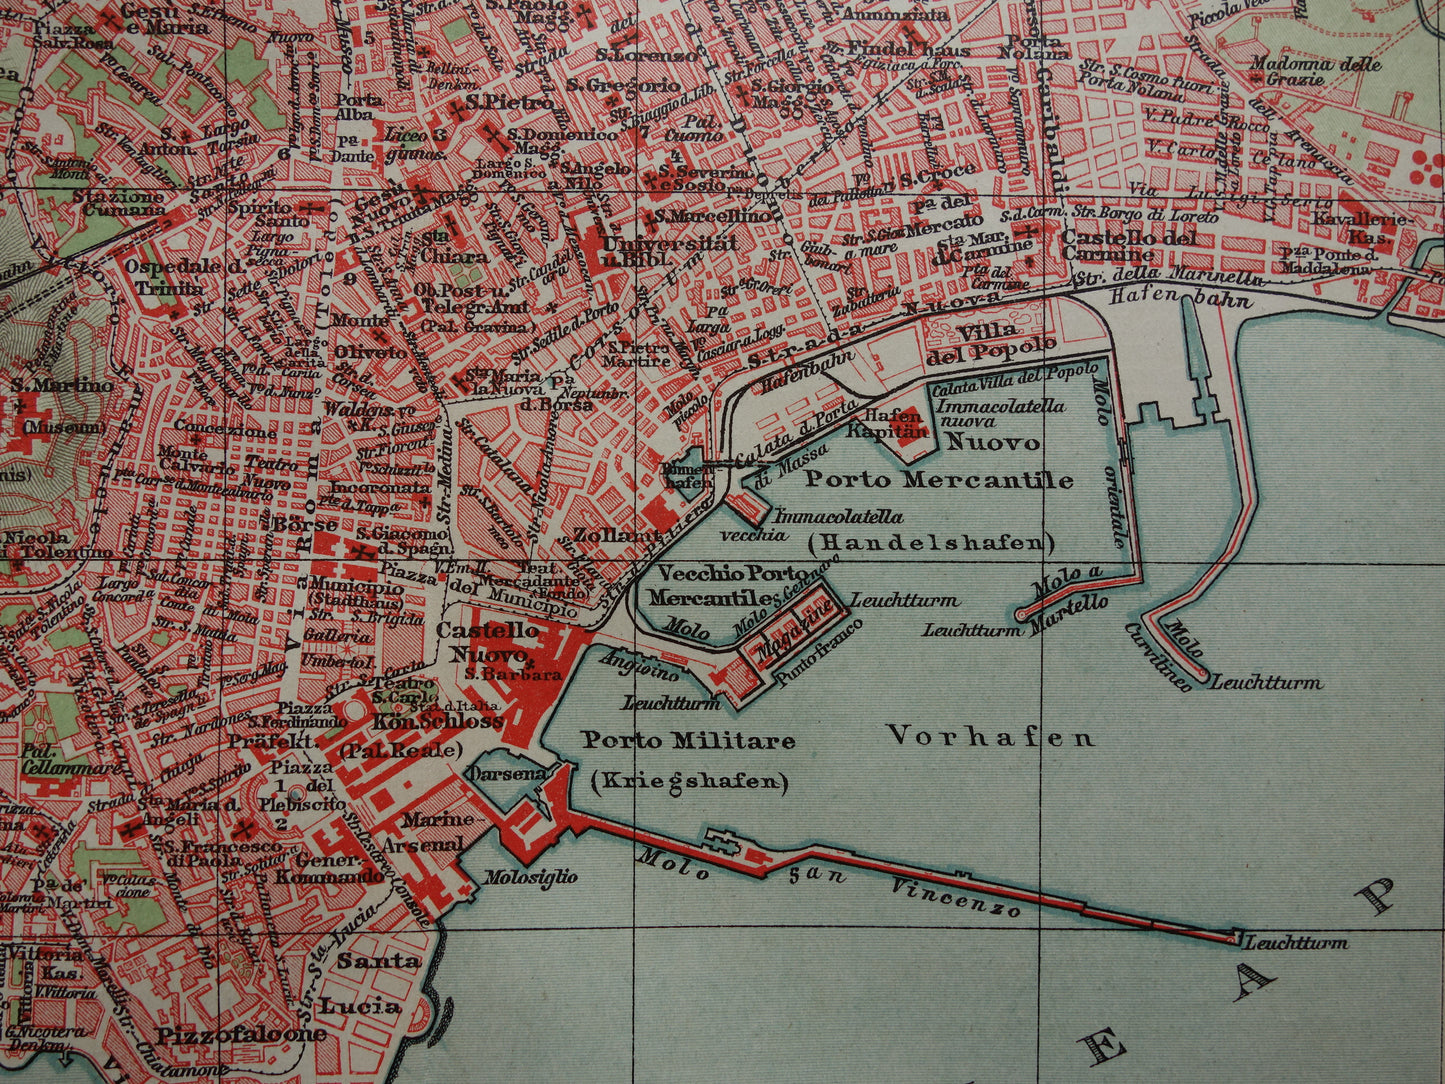 NAPELS antieke plattegrond 115+ jaar oude kaart van Napoli Italië uit 1905 - originele vintage historische kaarten